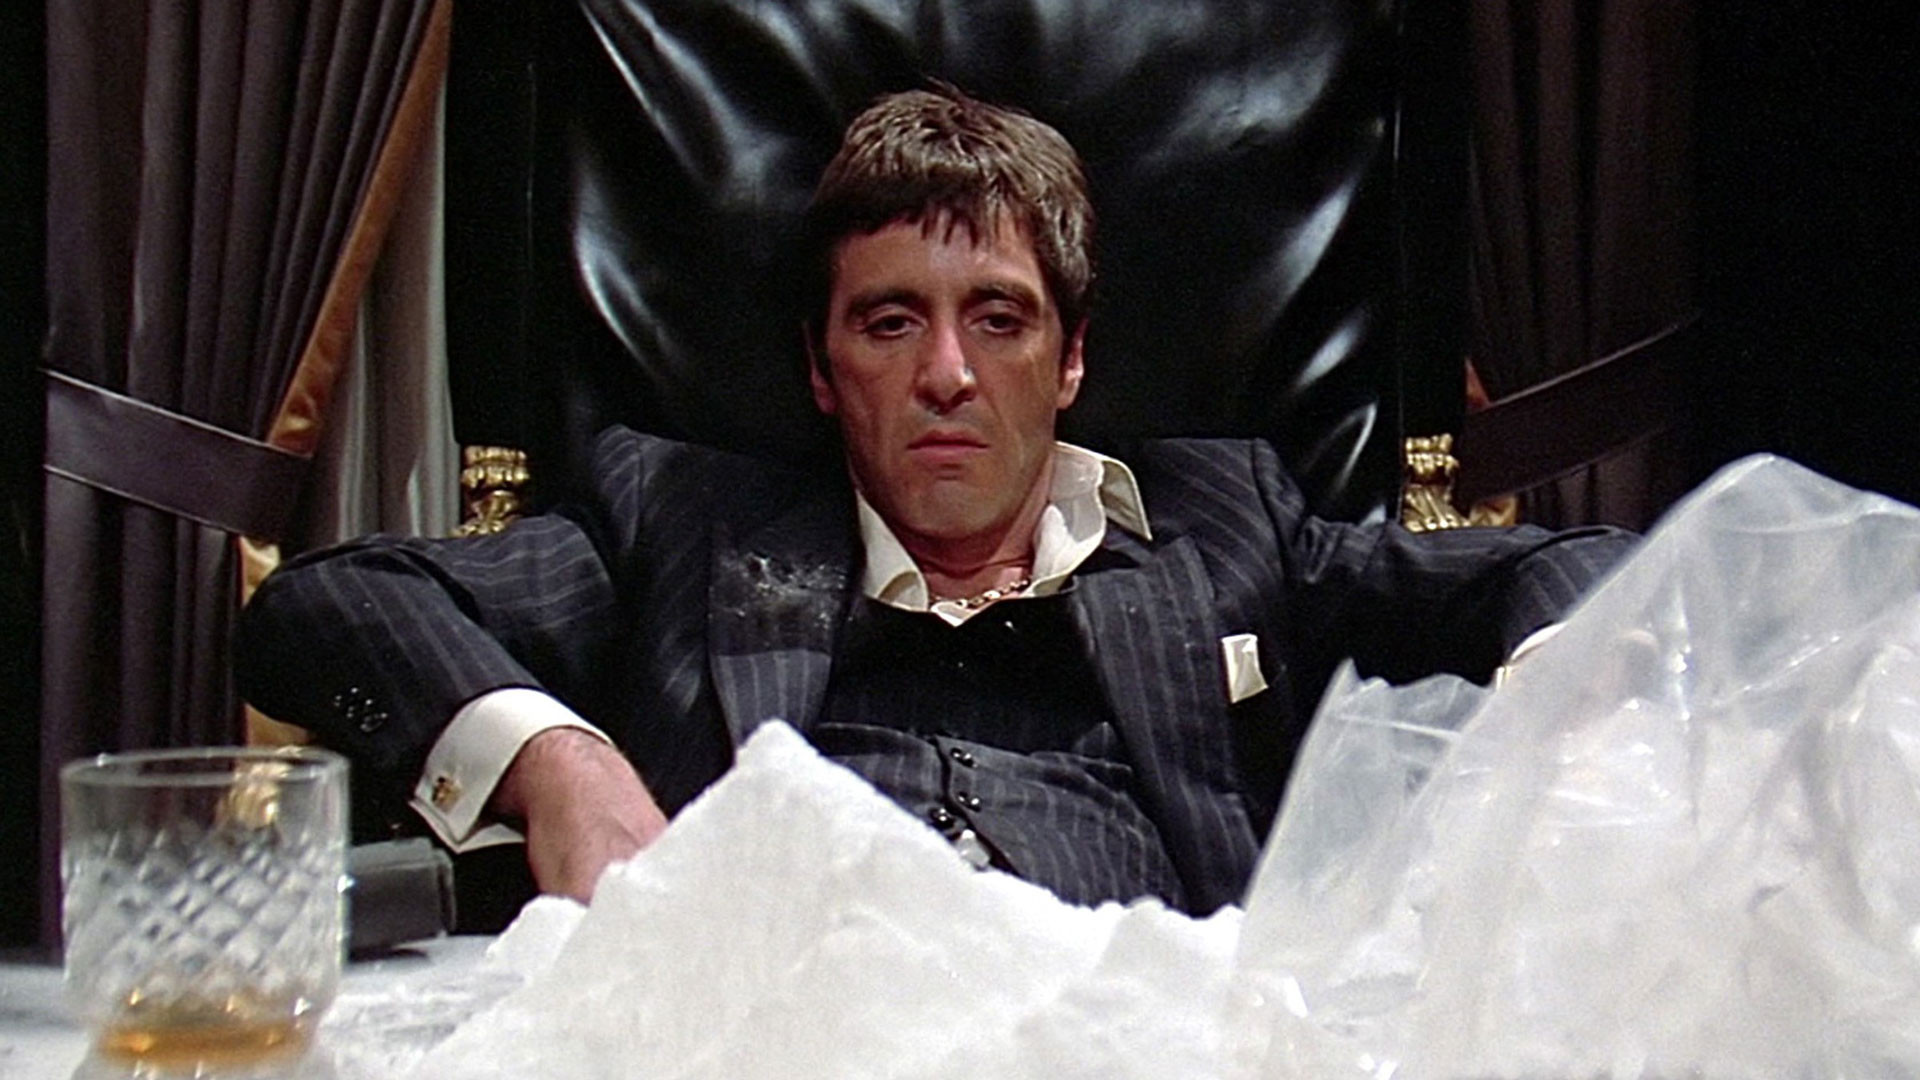 гора кокаина на столе